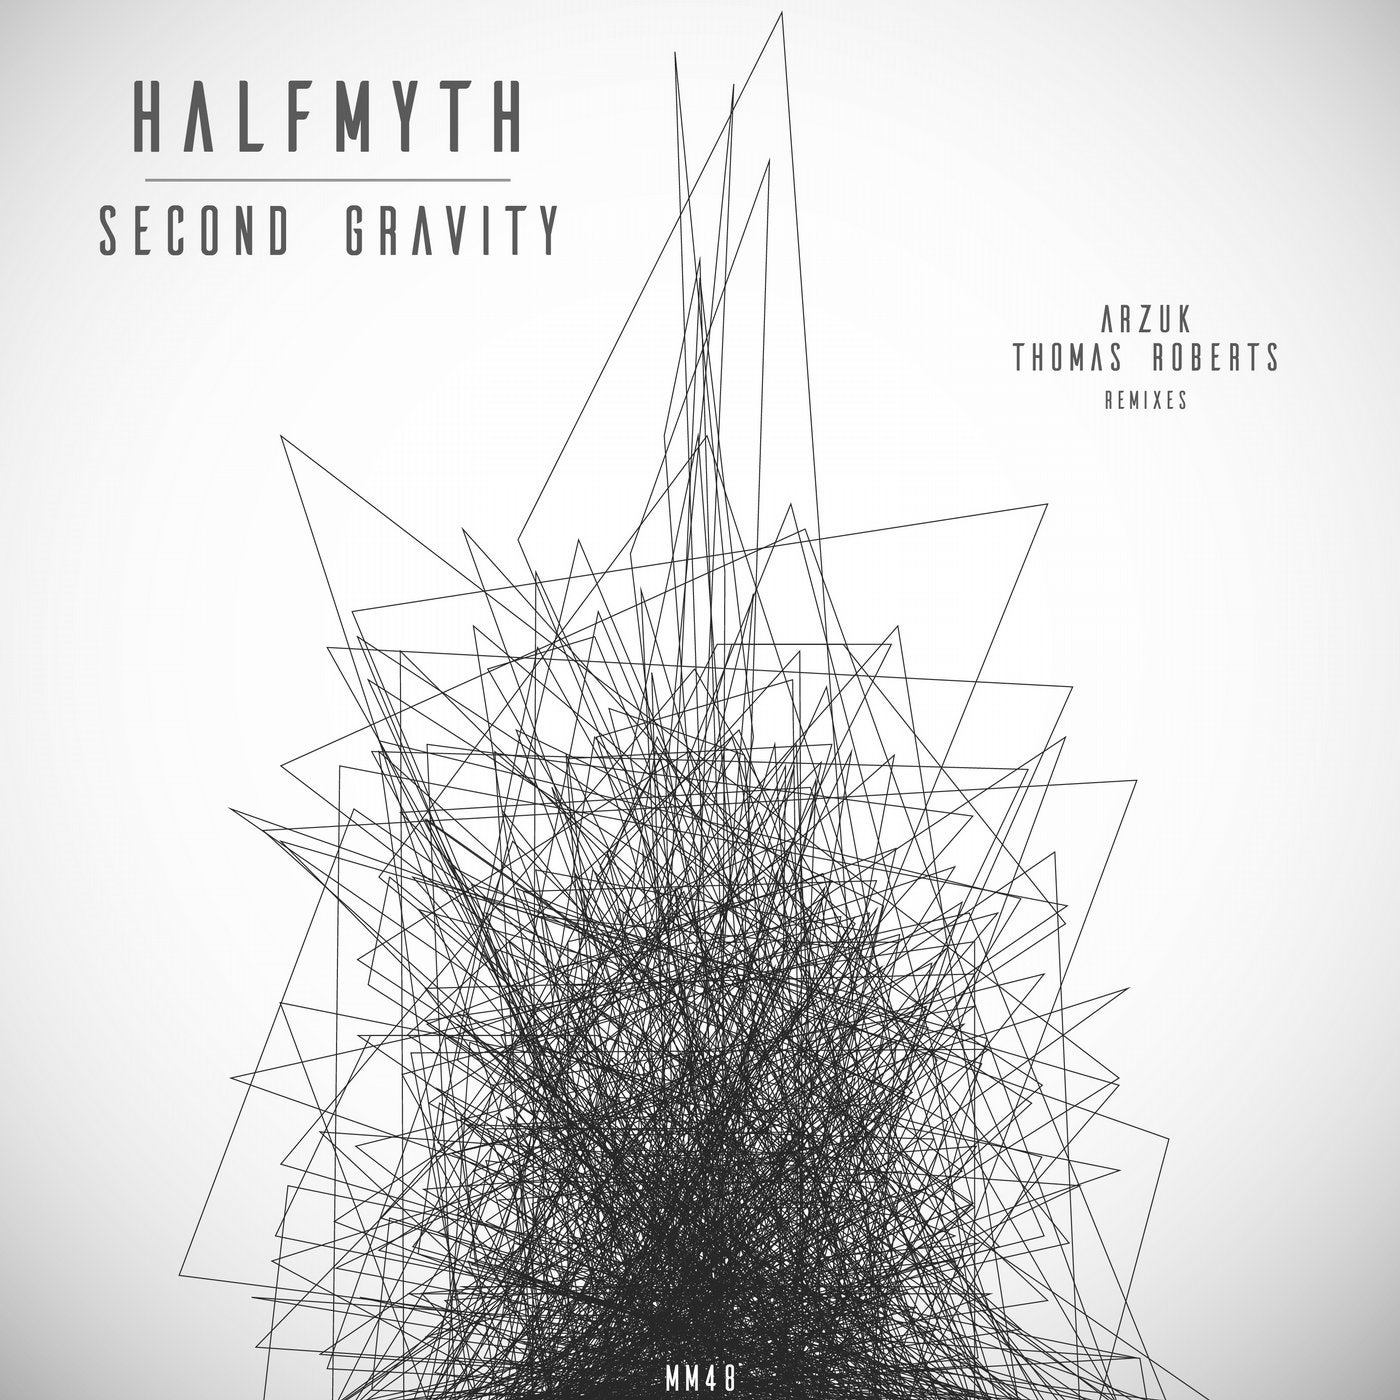 Second Gravity(Arzuk & Thomas Roberts Remixes)